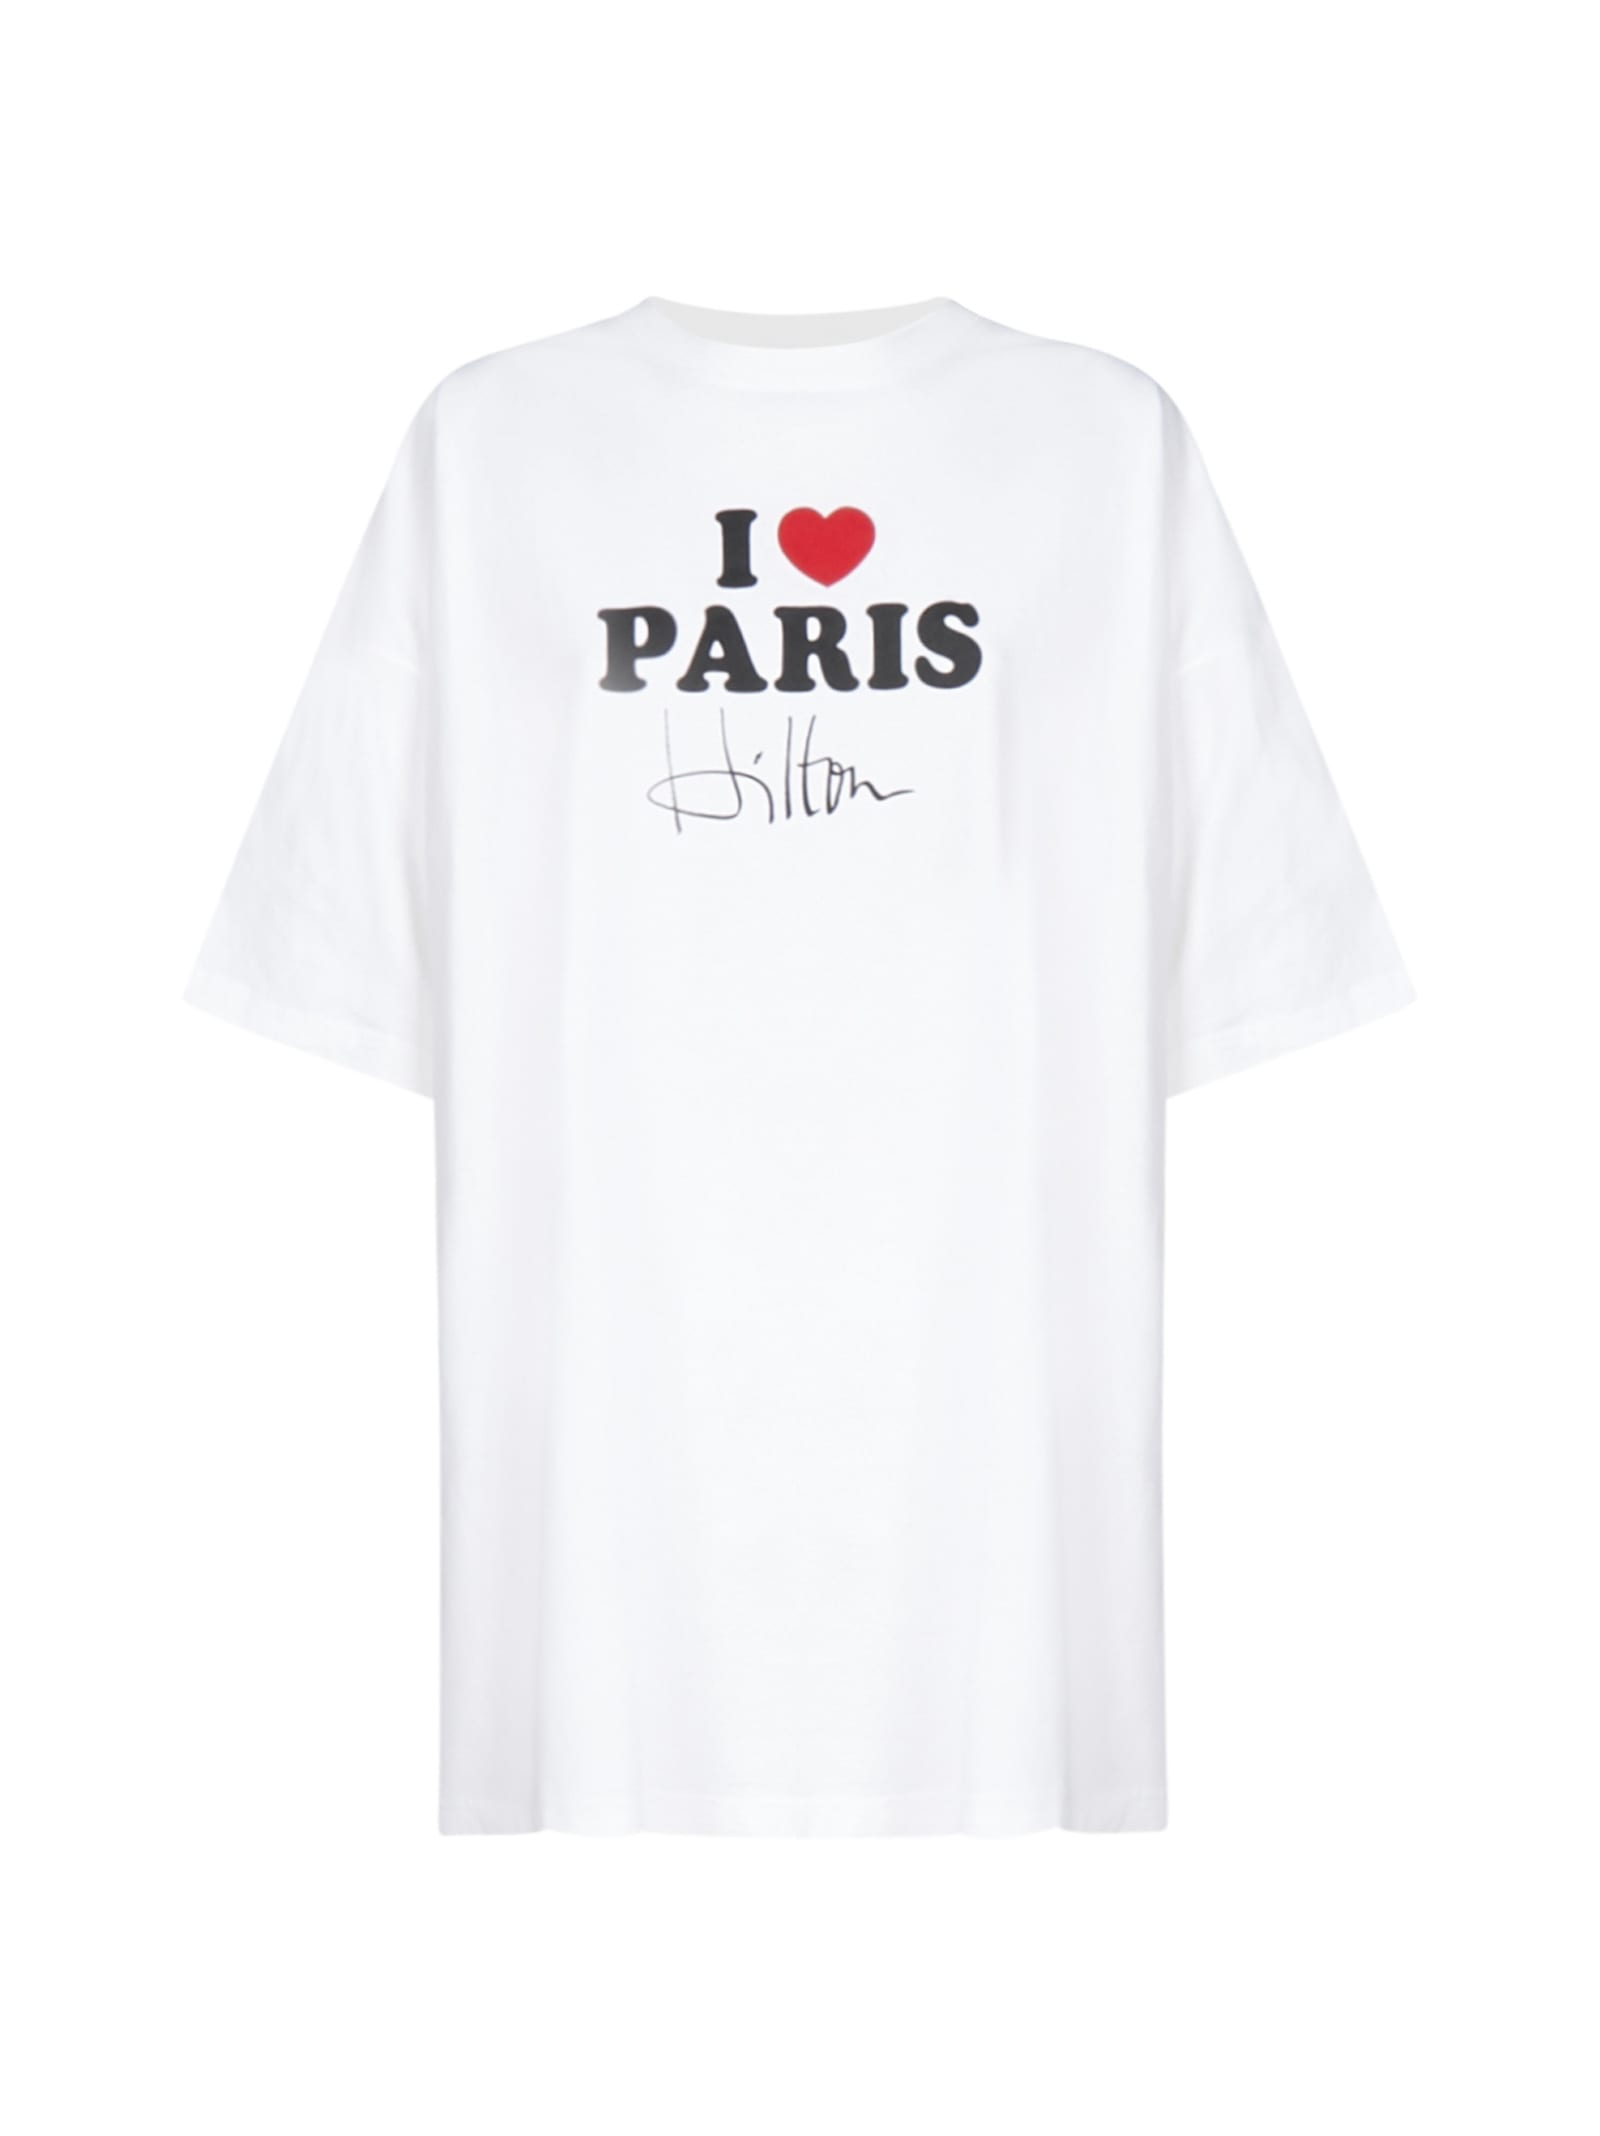 VETEMENTS I LOVE PARIS HILTON COTTON T-SHIRT,11520631